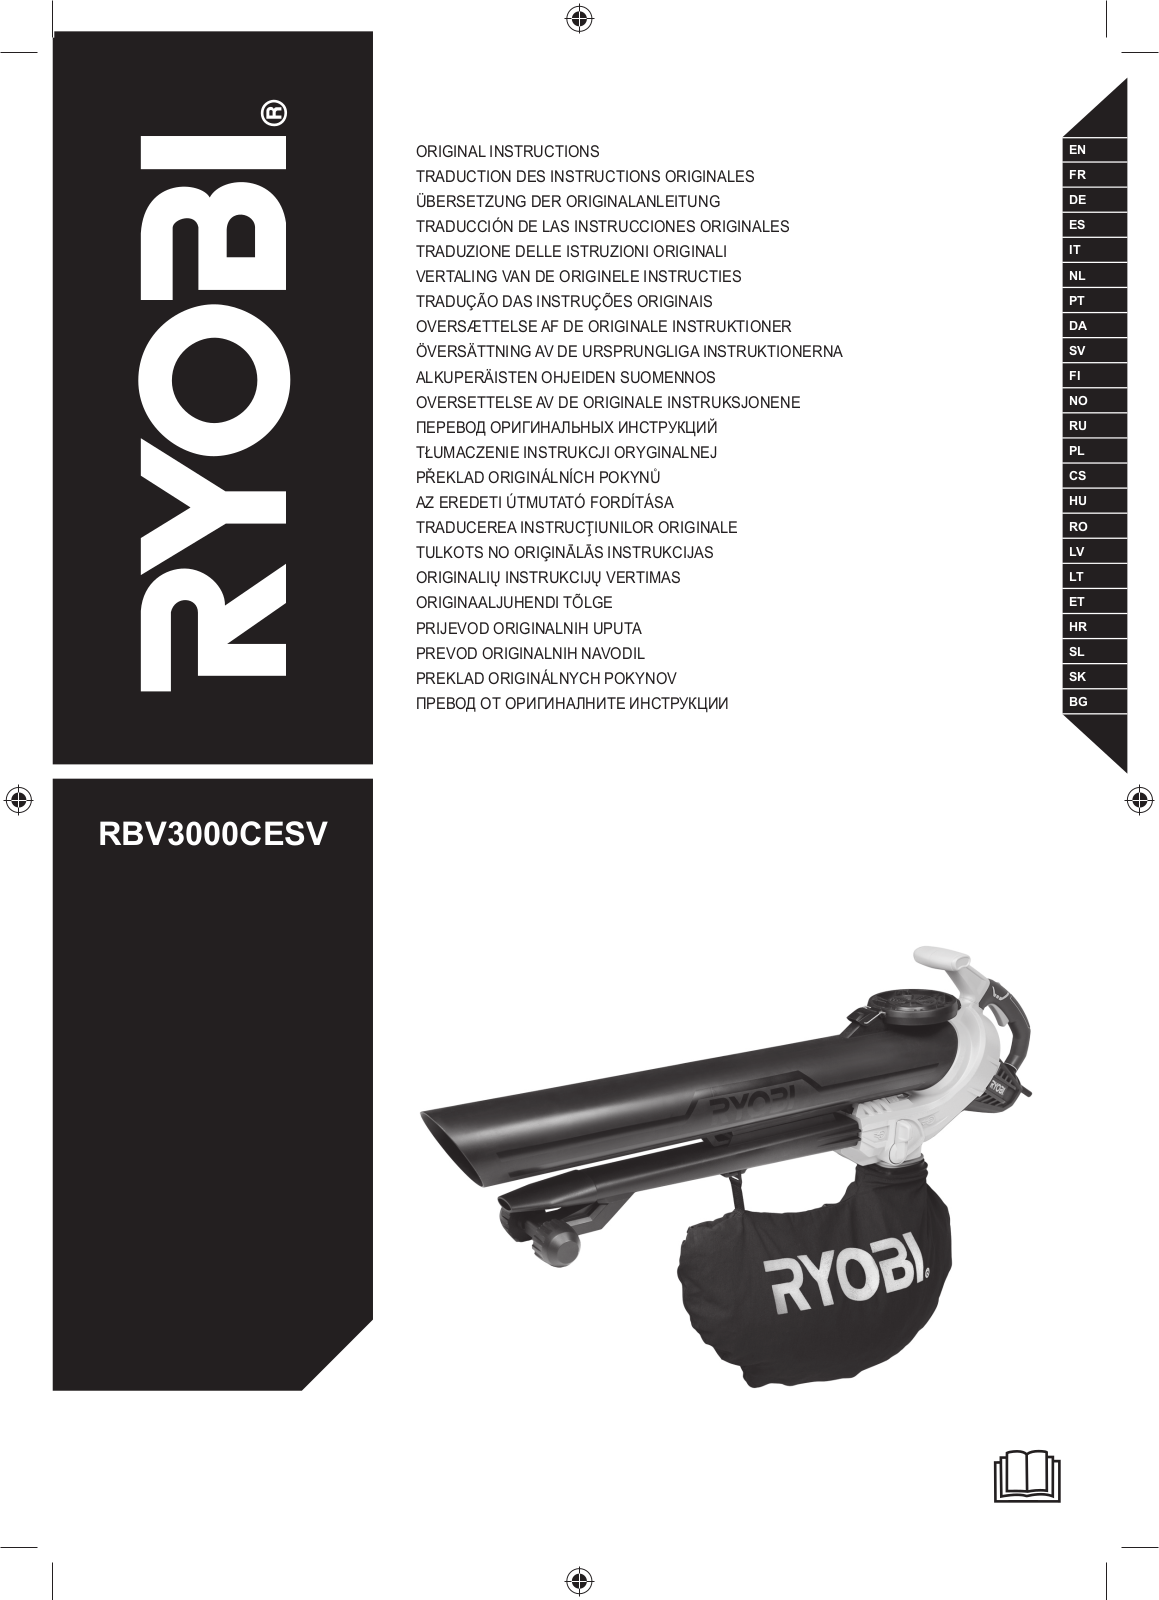 Ryobi RBV3000CESV User Manual